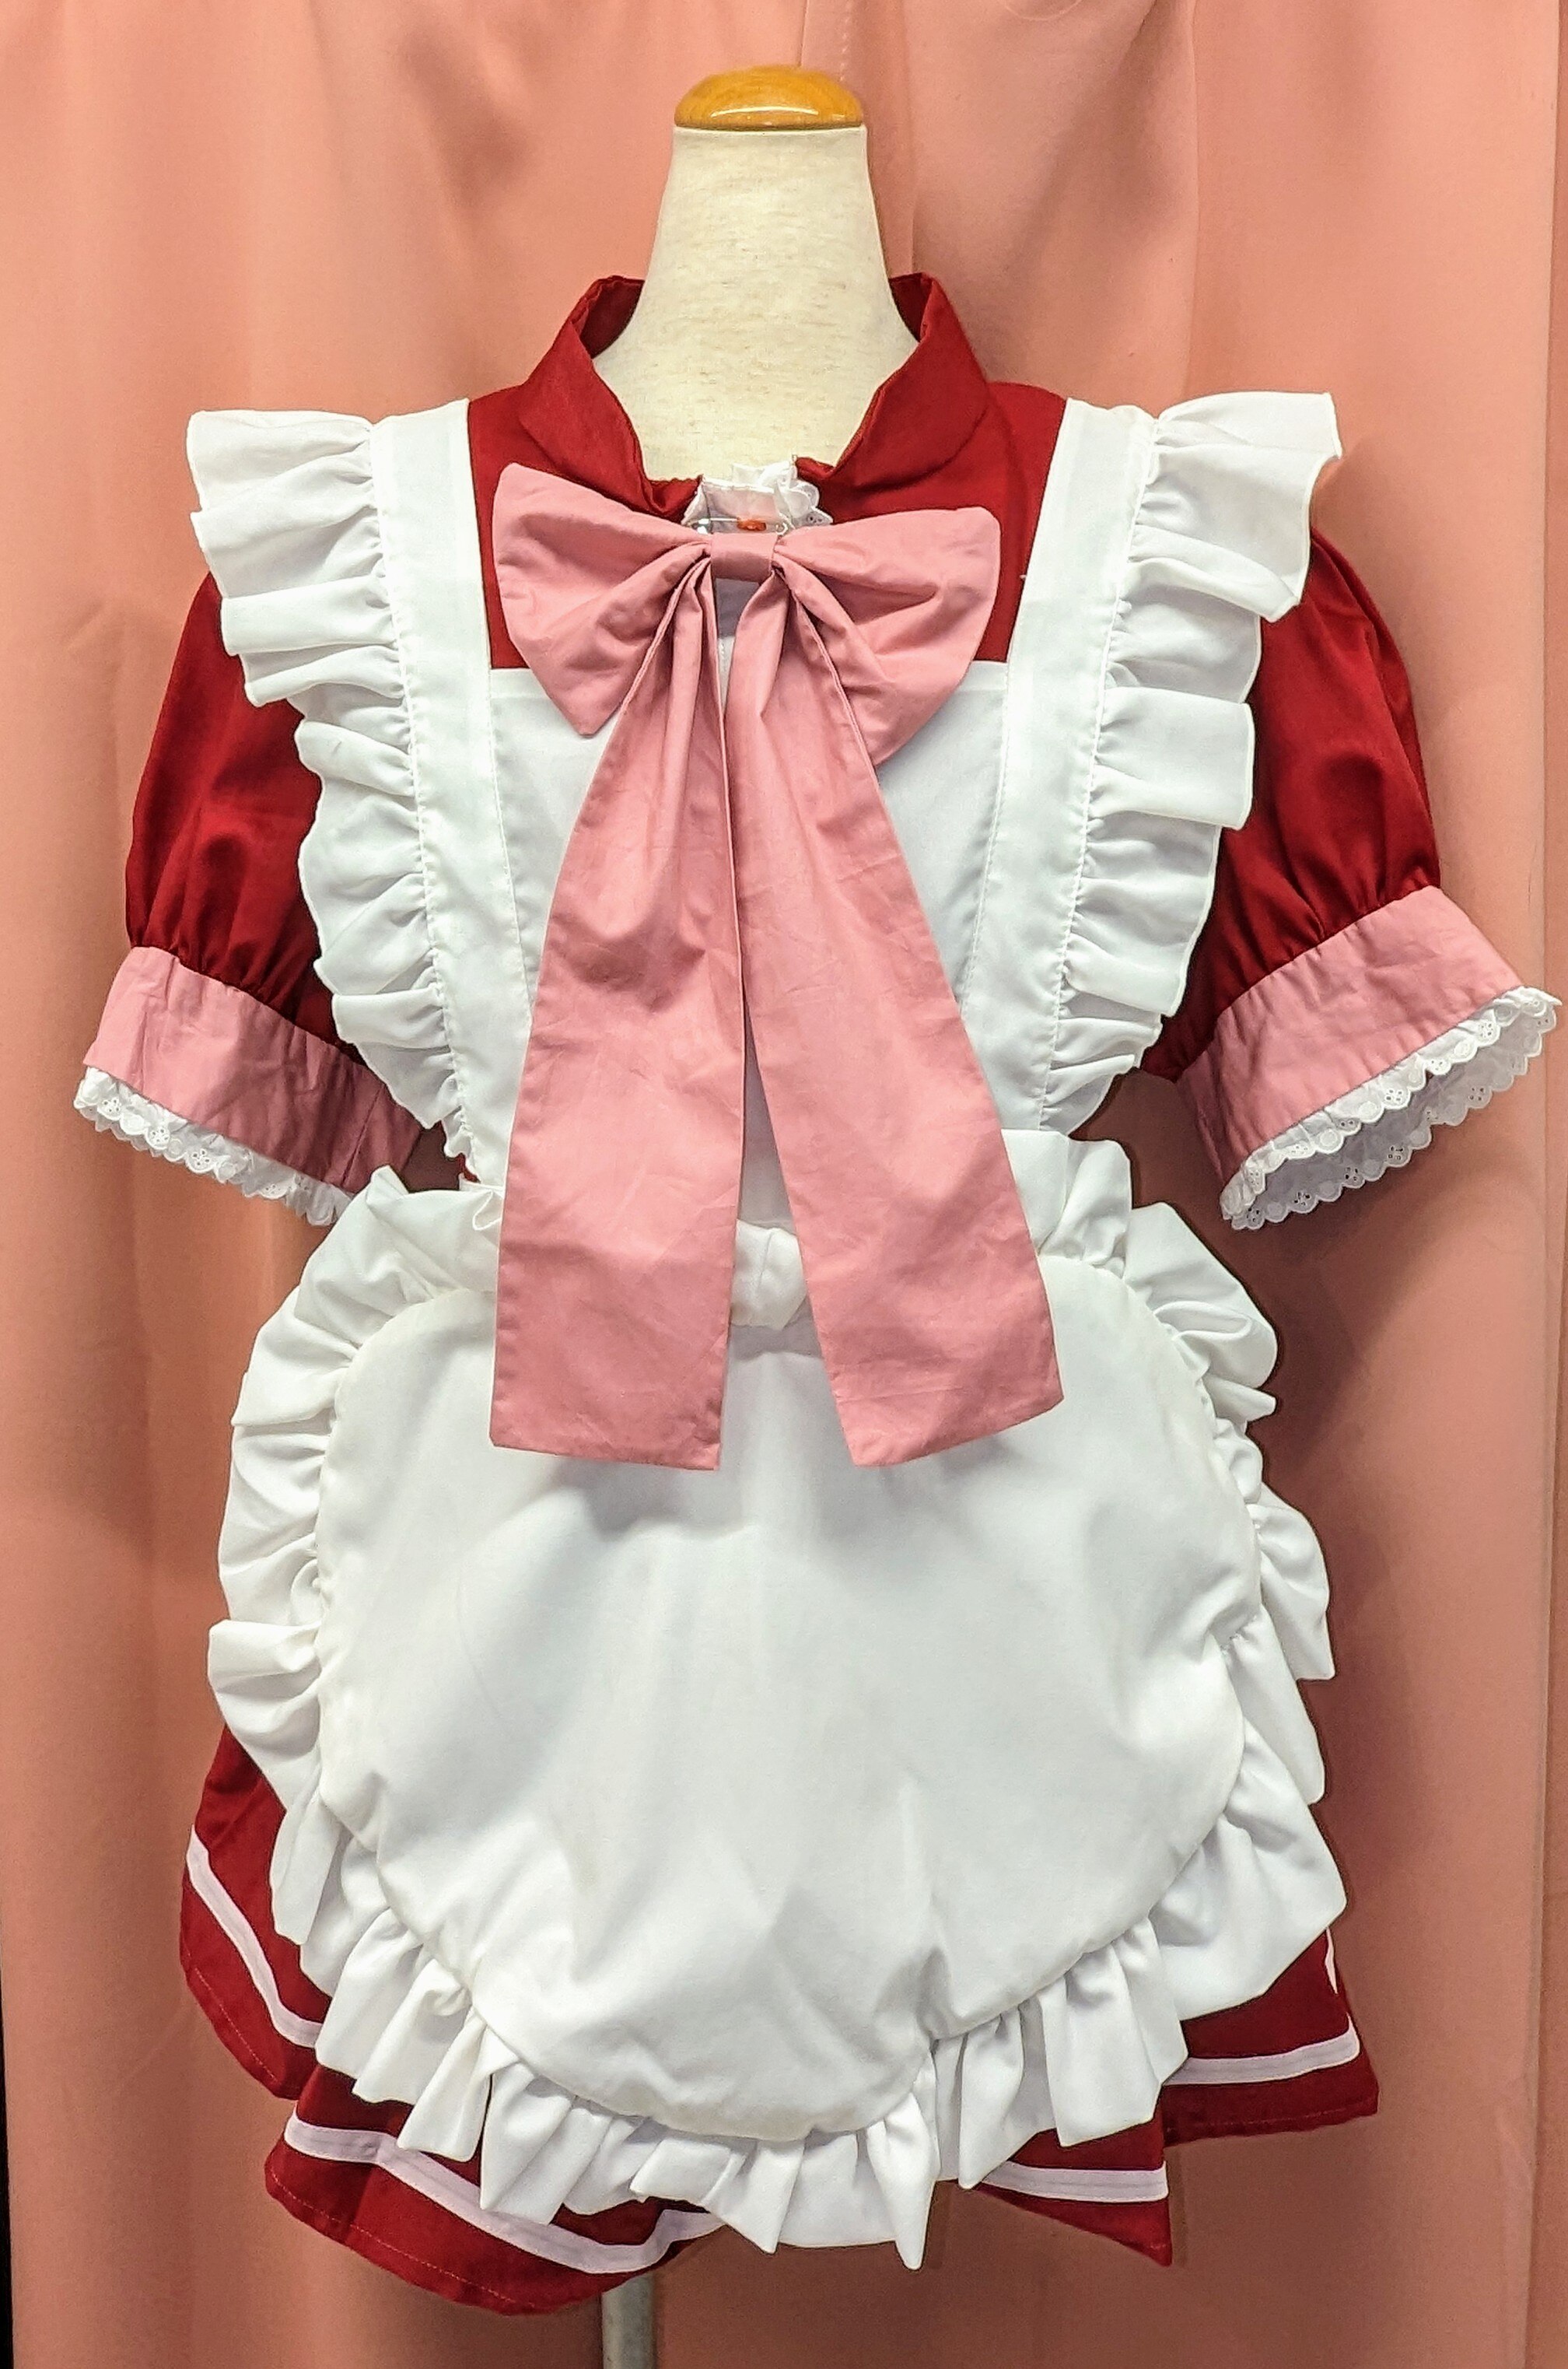 東京ミュウミュウ 桃宮いちご カフェミュウミュウ 風 メイド服 女性Mサイズ位 コスプレ衣装